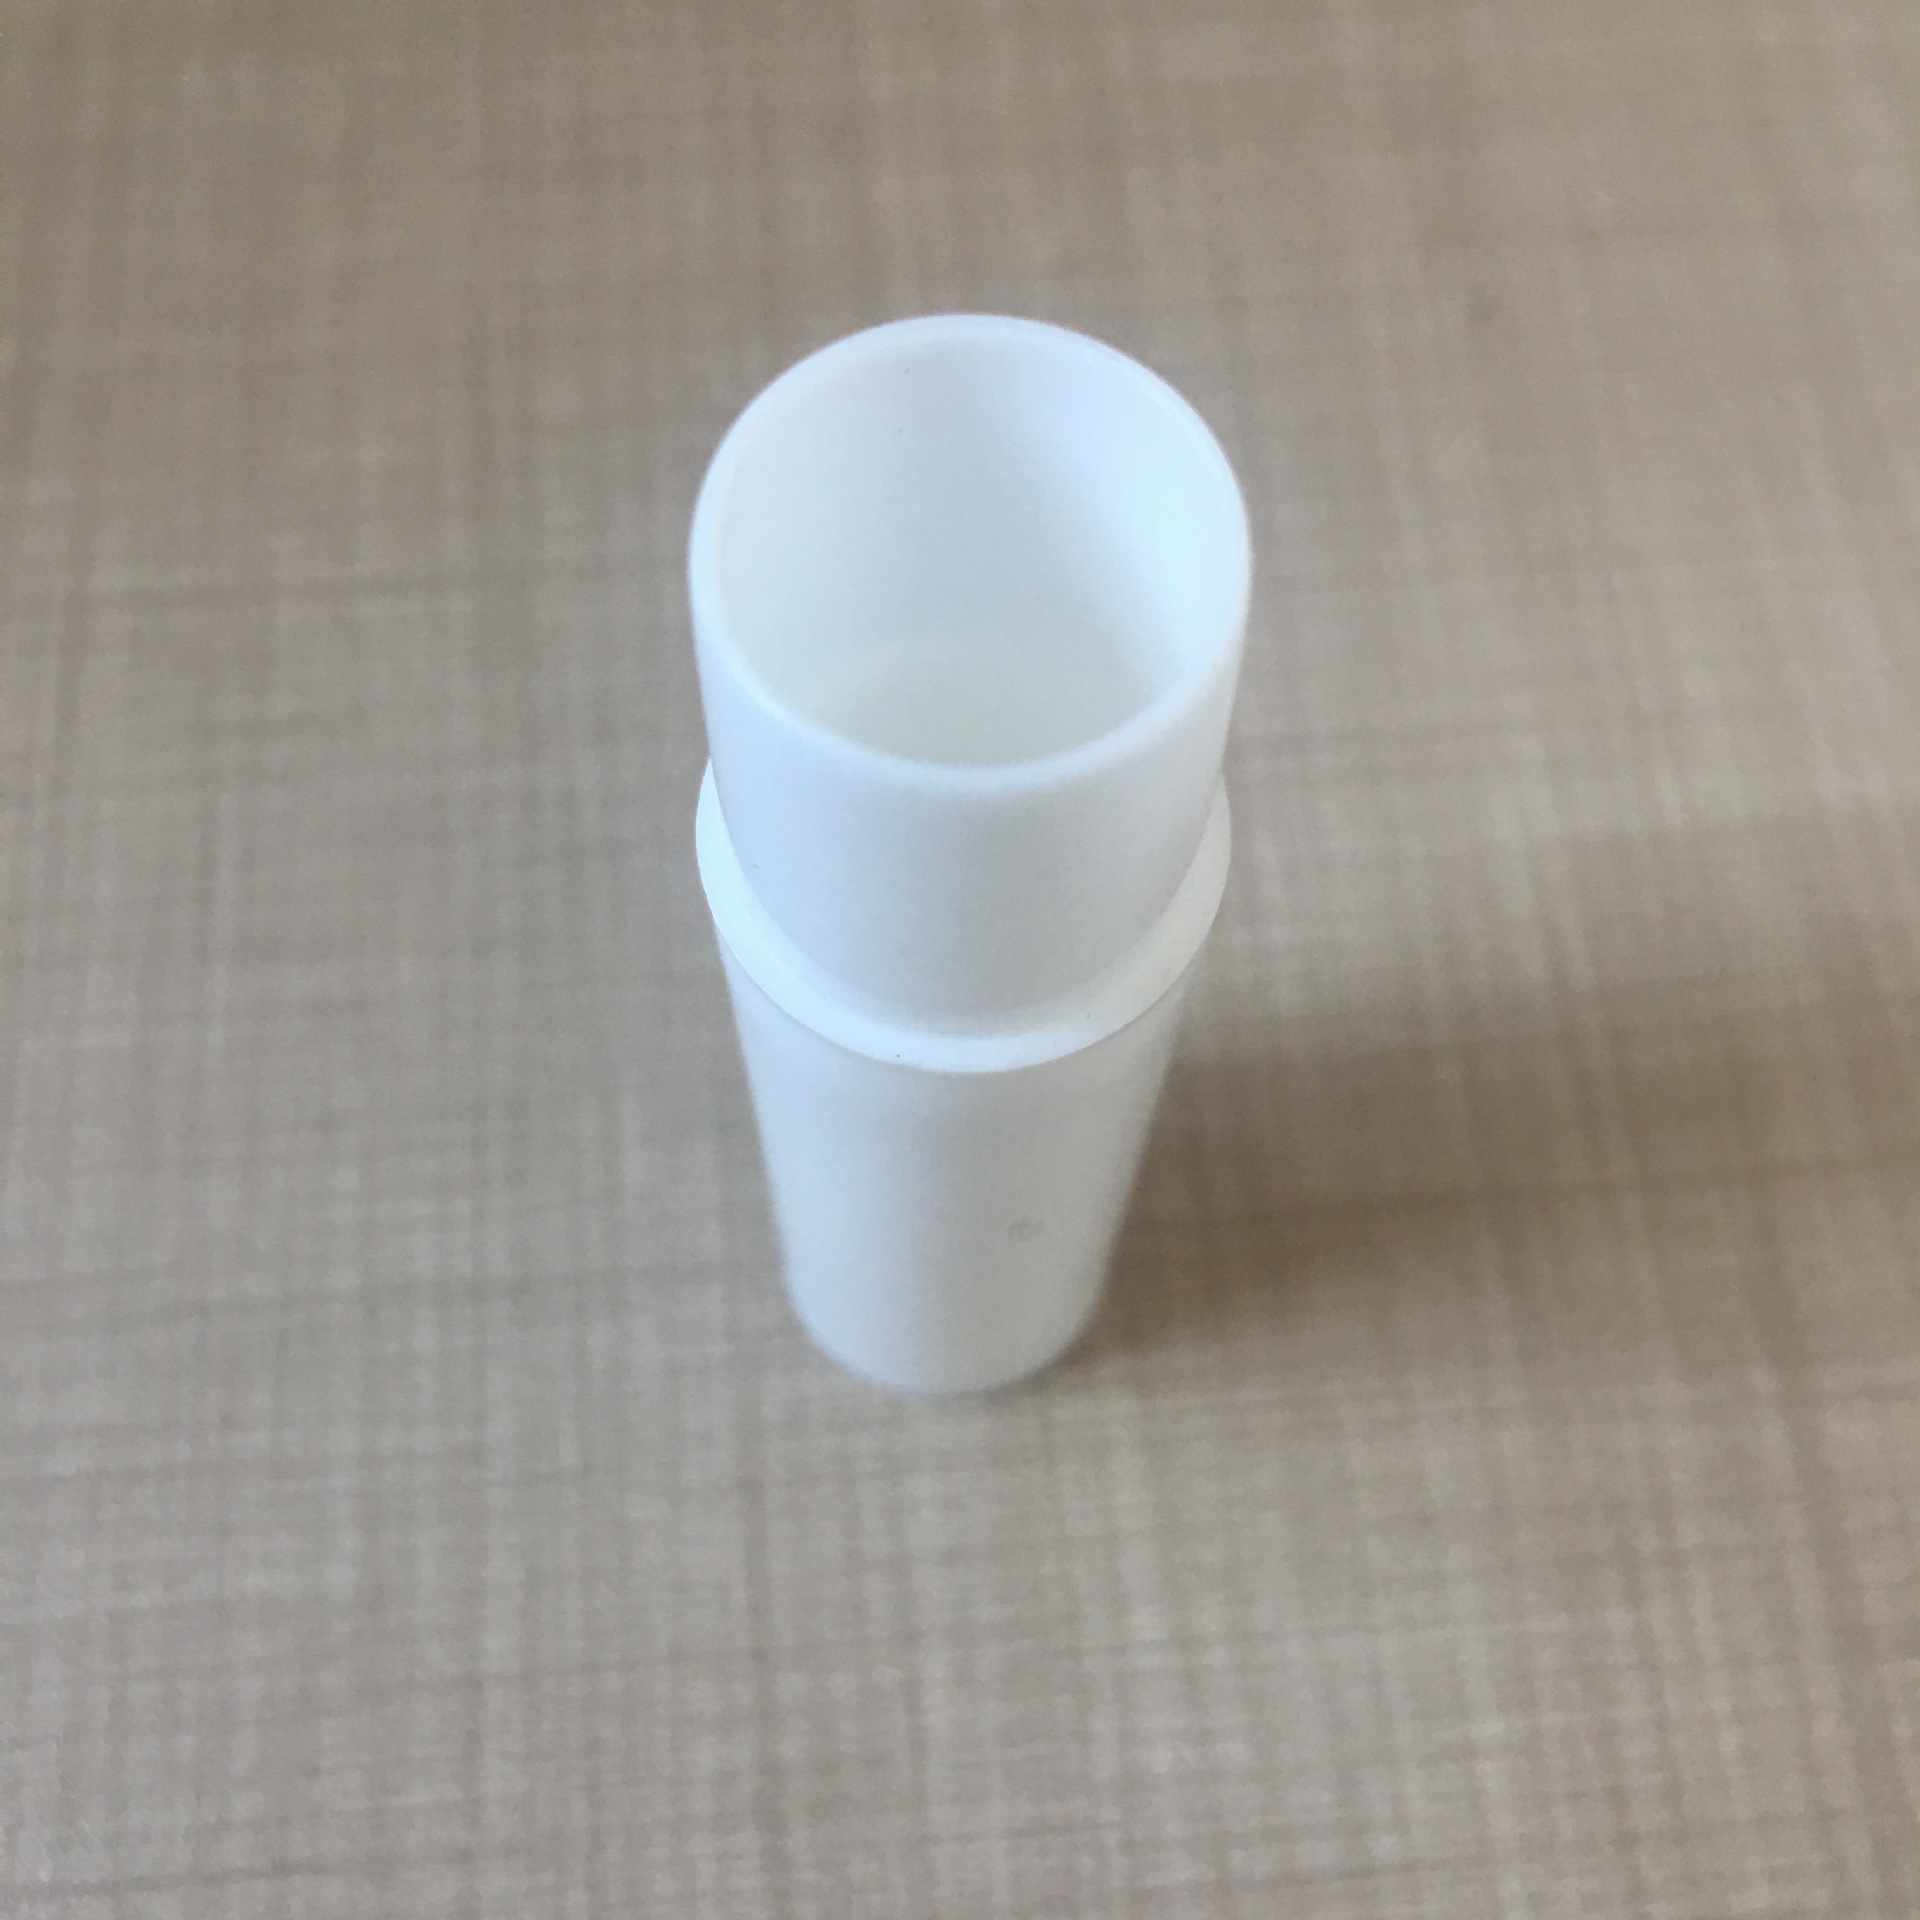 厂家直销2g药管塑料管透明塑料管医用塑料管现货供应示例图9